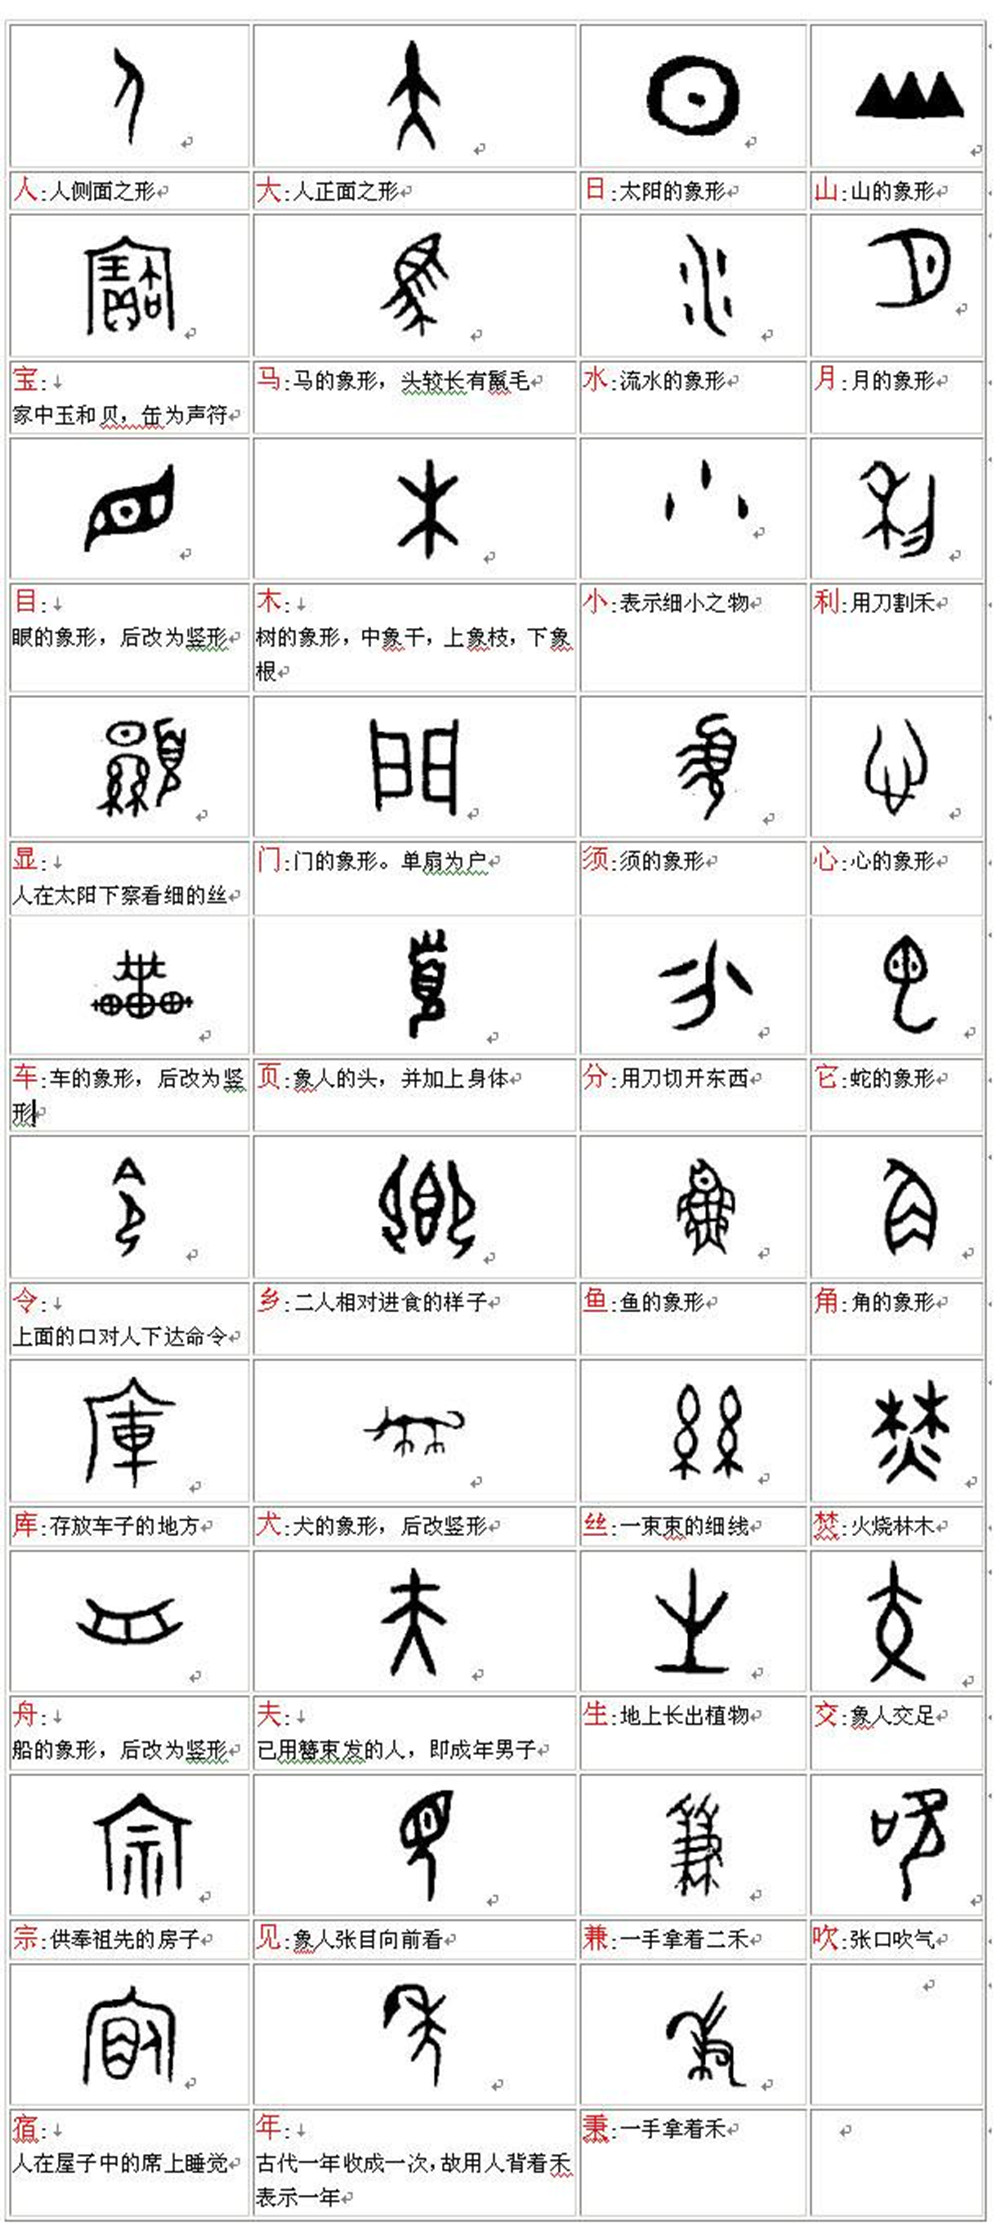 中国历史字体演变过程图片